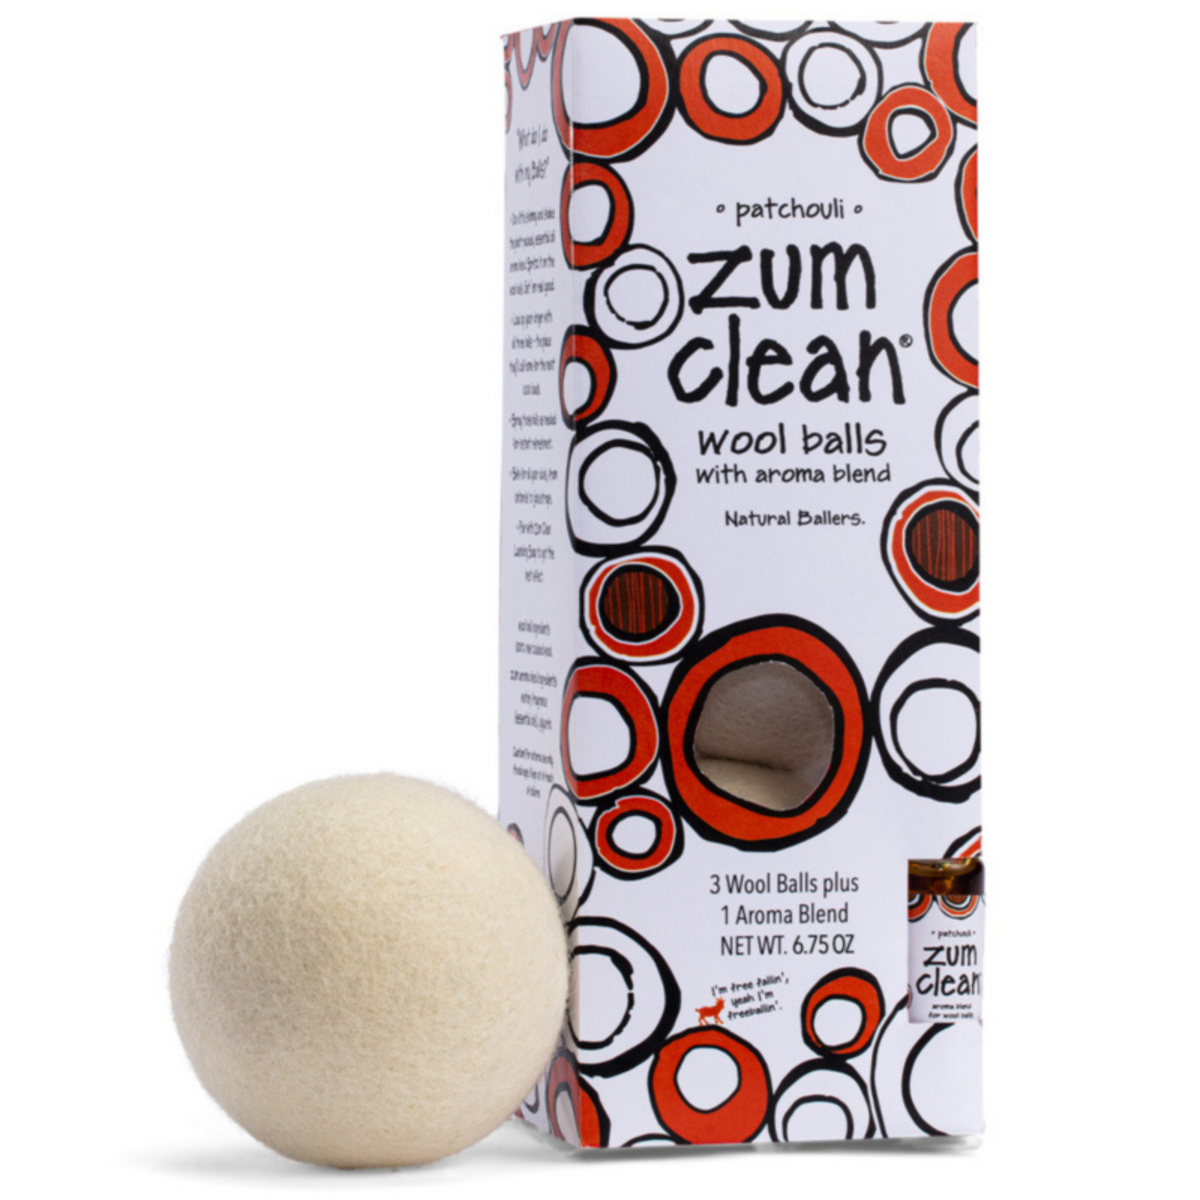 Primary image of Zum Clean Patchouli Wool Dryer Balls